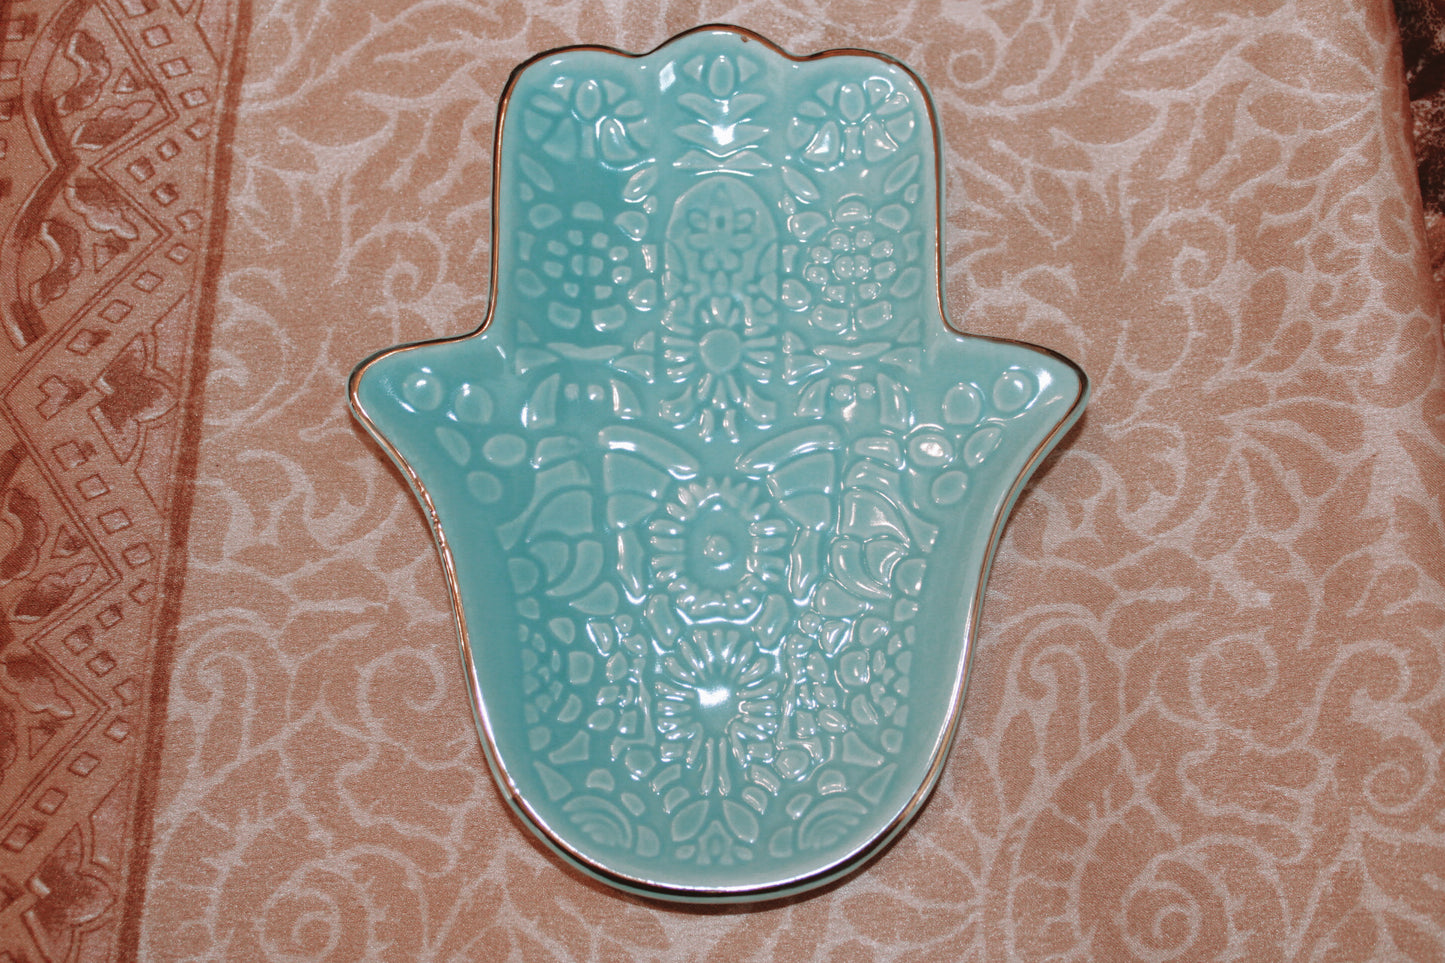 Turquoise Hamsa Hand Jewellery Dish